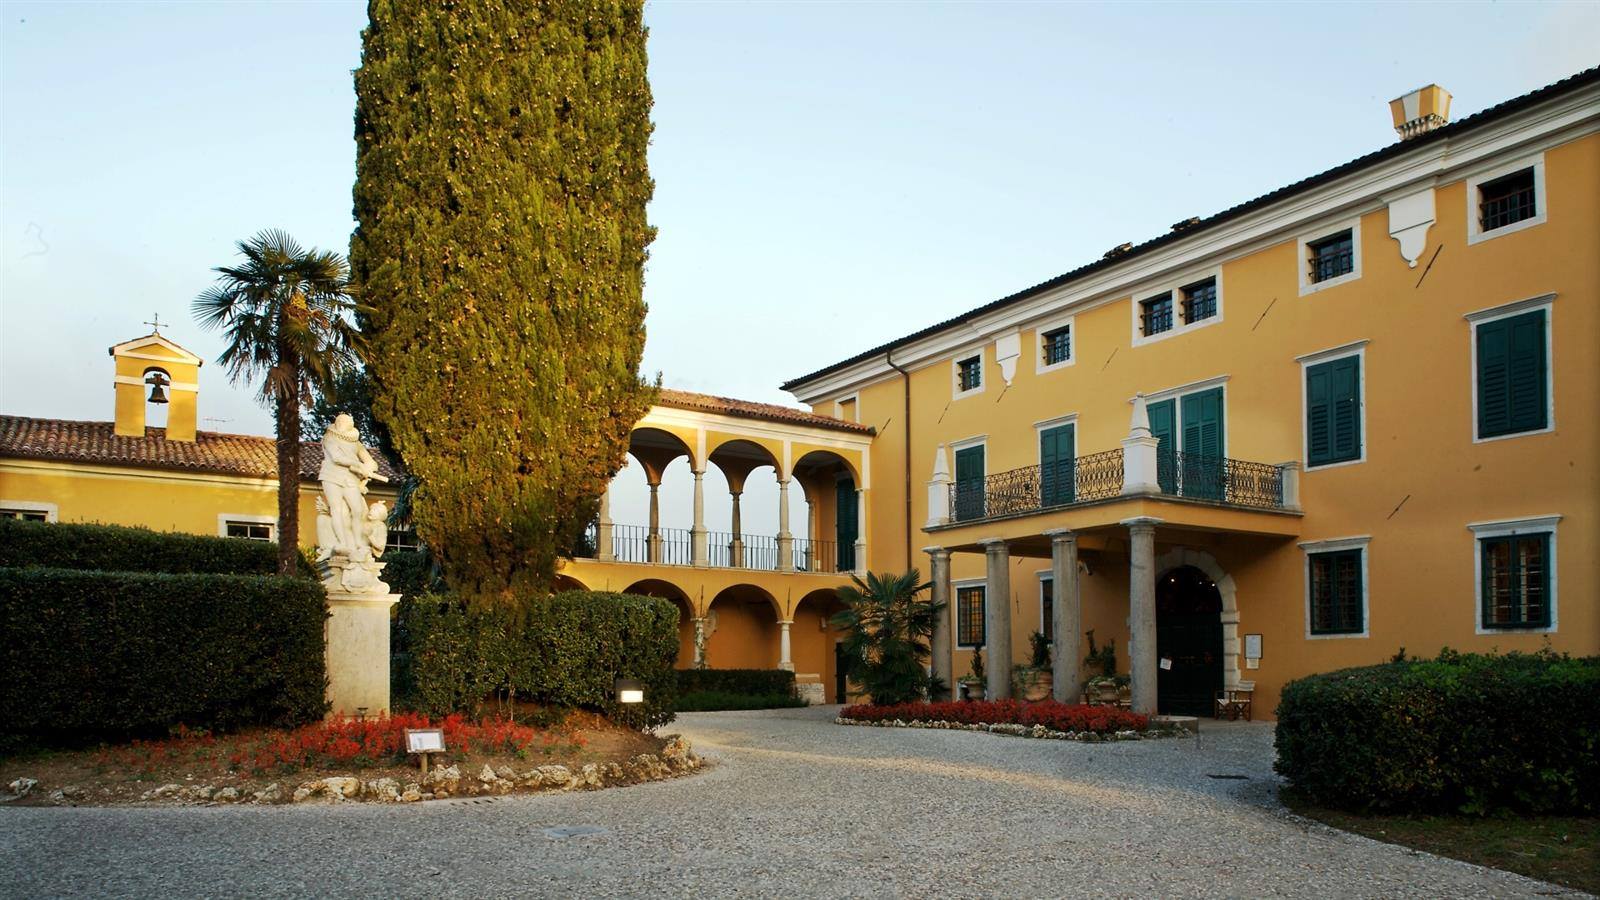 Al momento stai visualizzando Palazzo Coronini, a Gorizia: riprendono domenica 26 giugno le visite congiunte con il Castello di Kromberk